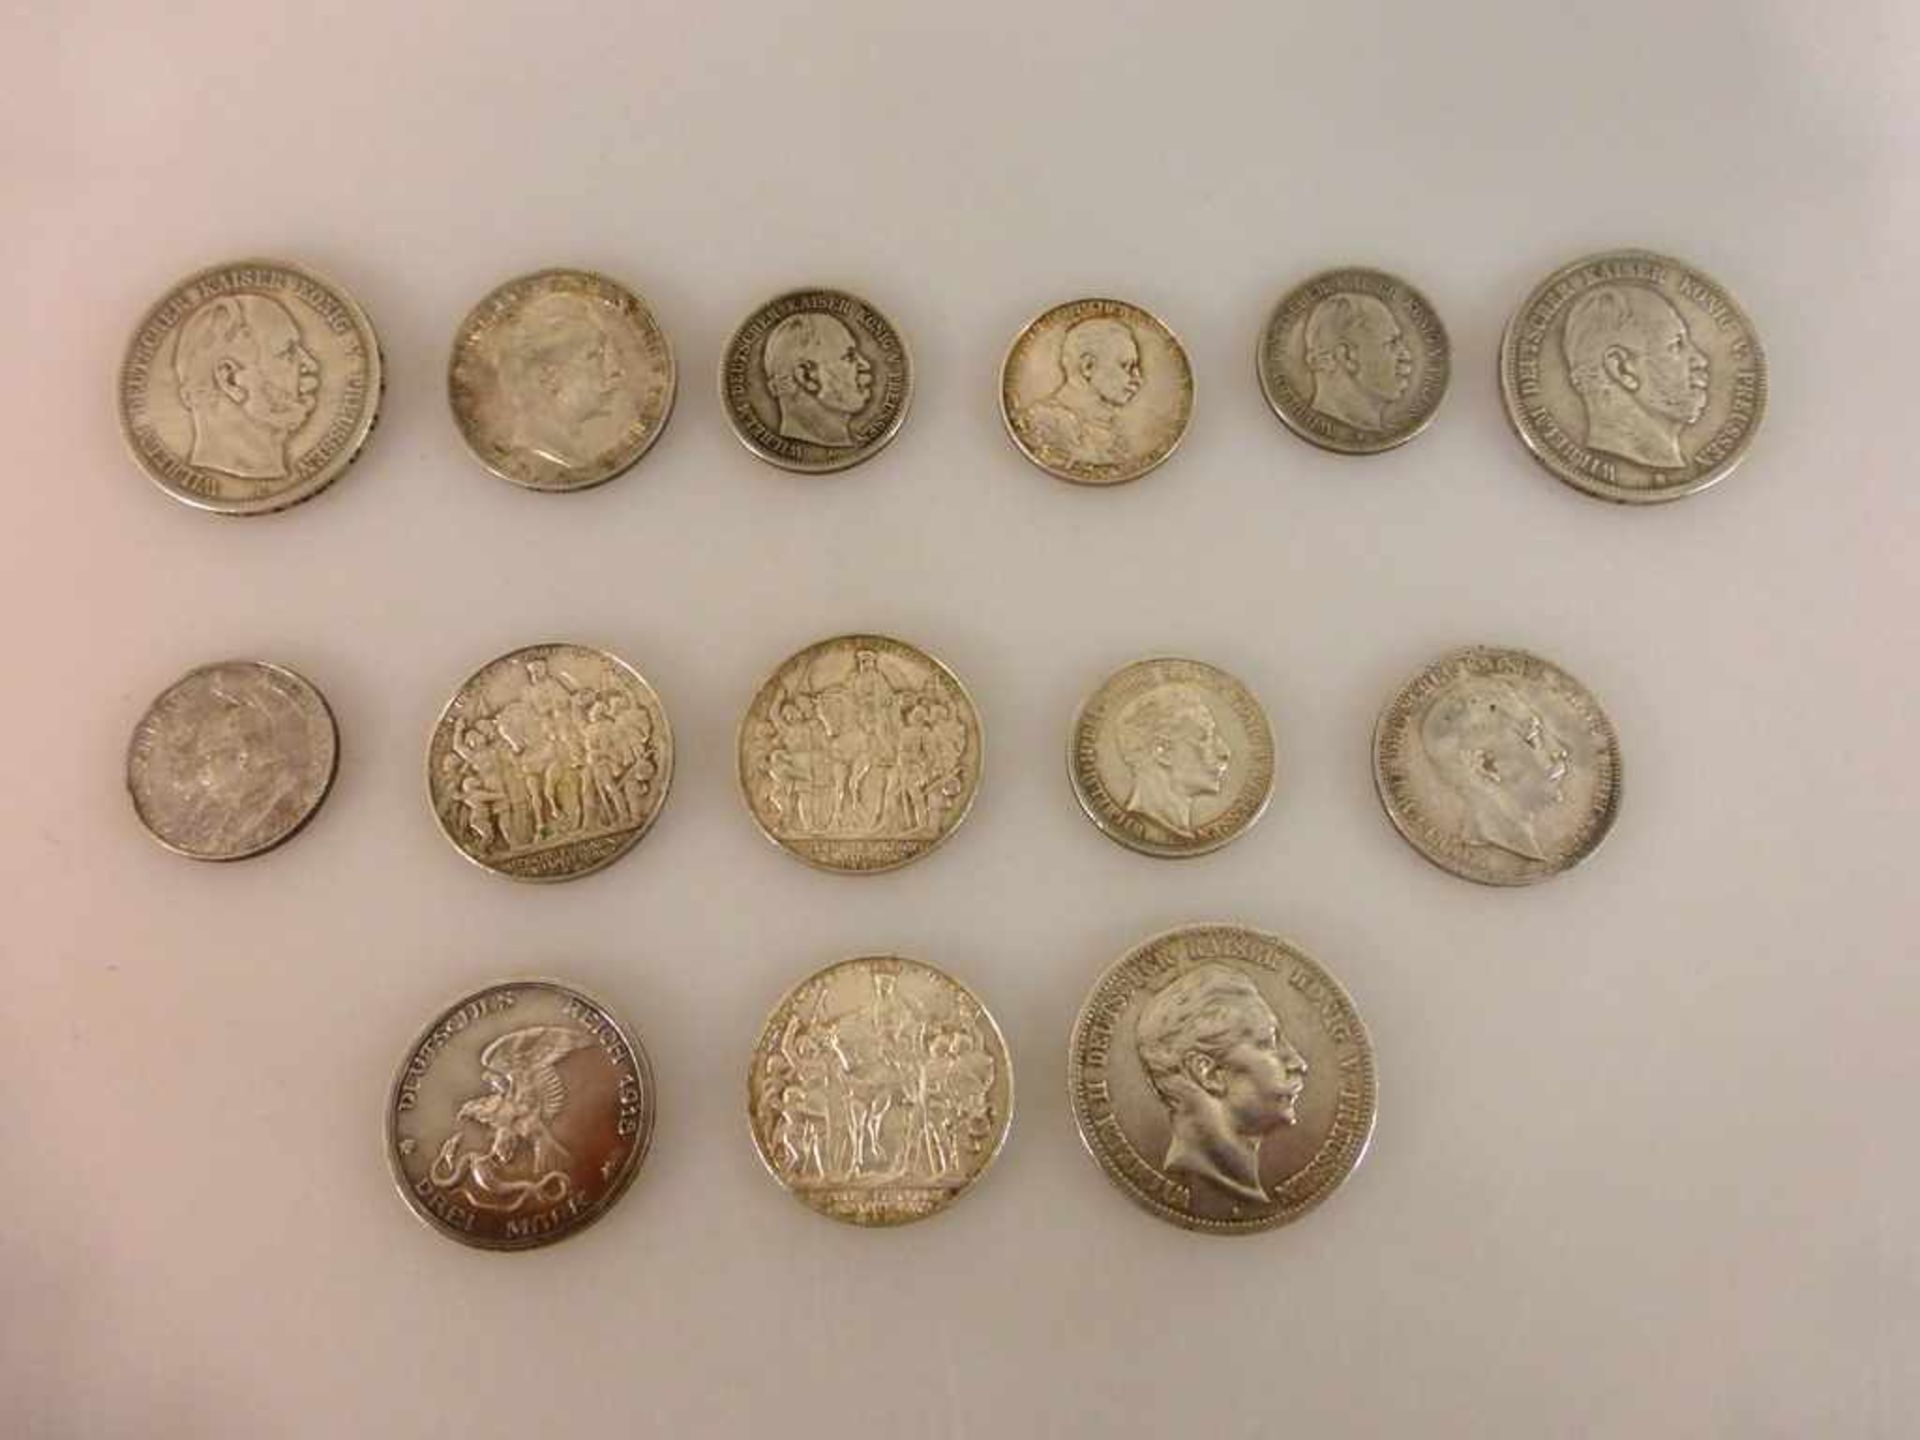 Kaiserreich Preussen, 14 Silbermünzen, 5 Mark 1876C (Jaeger 97), 1875 B, 1895 (J104), 3Mark 1909 (